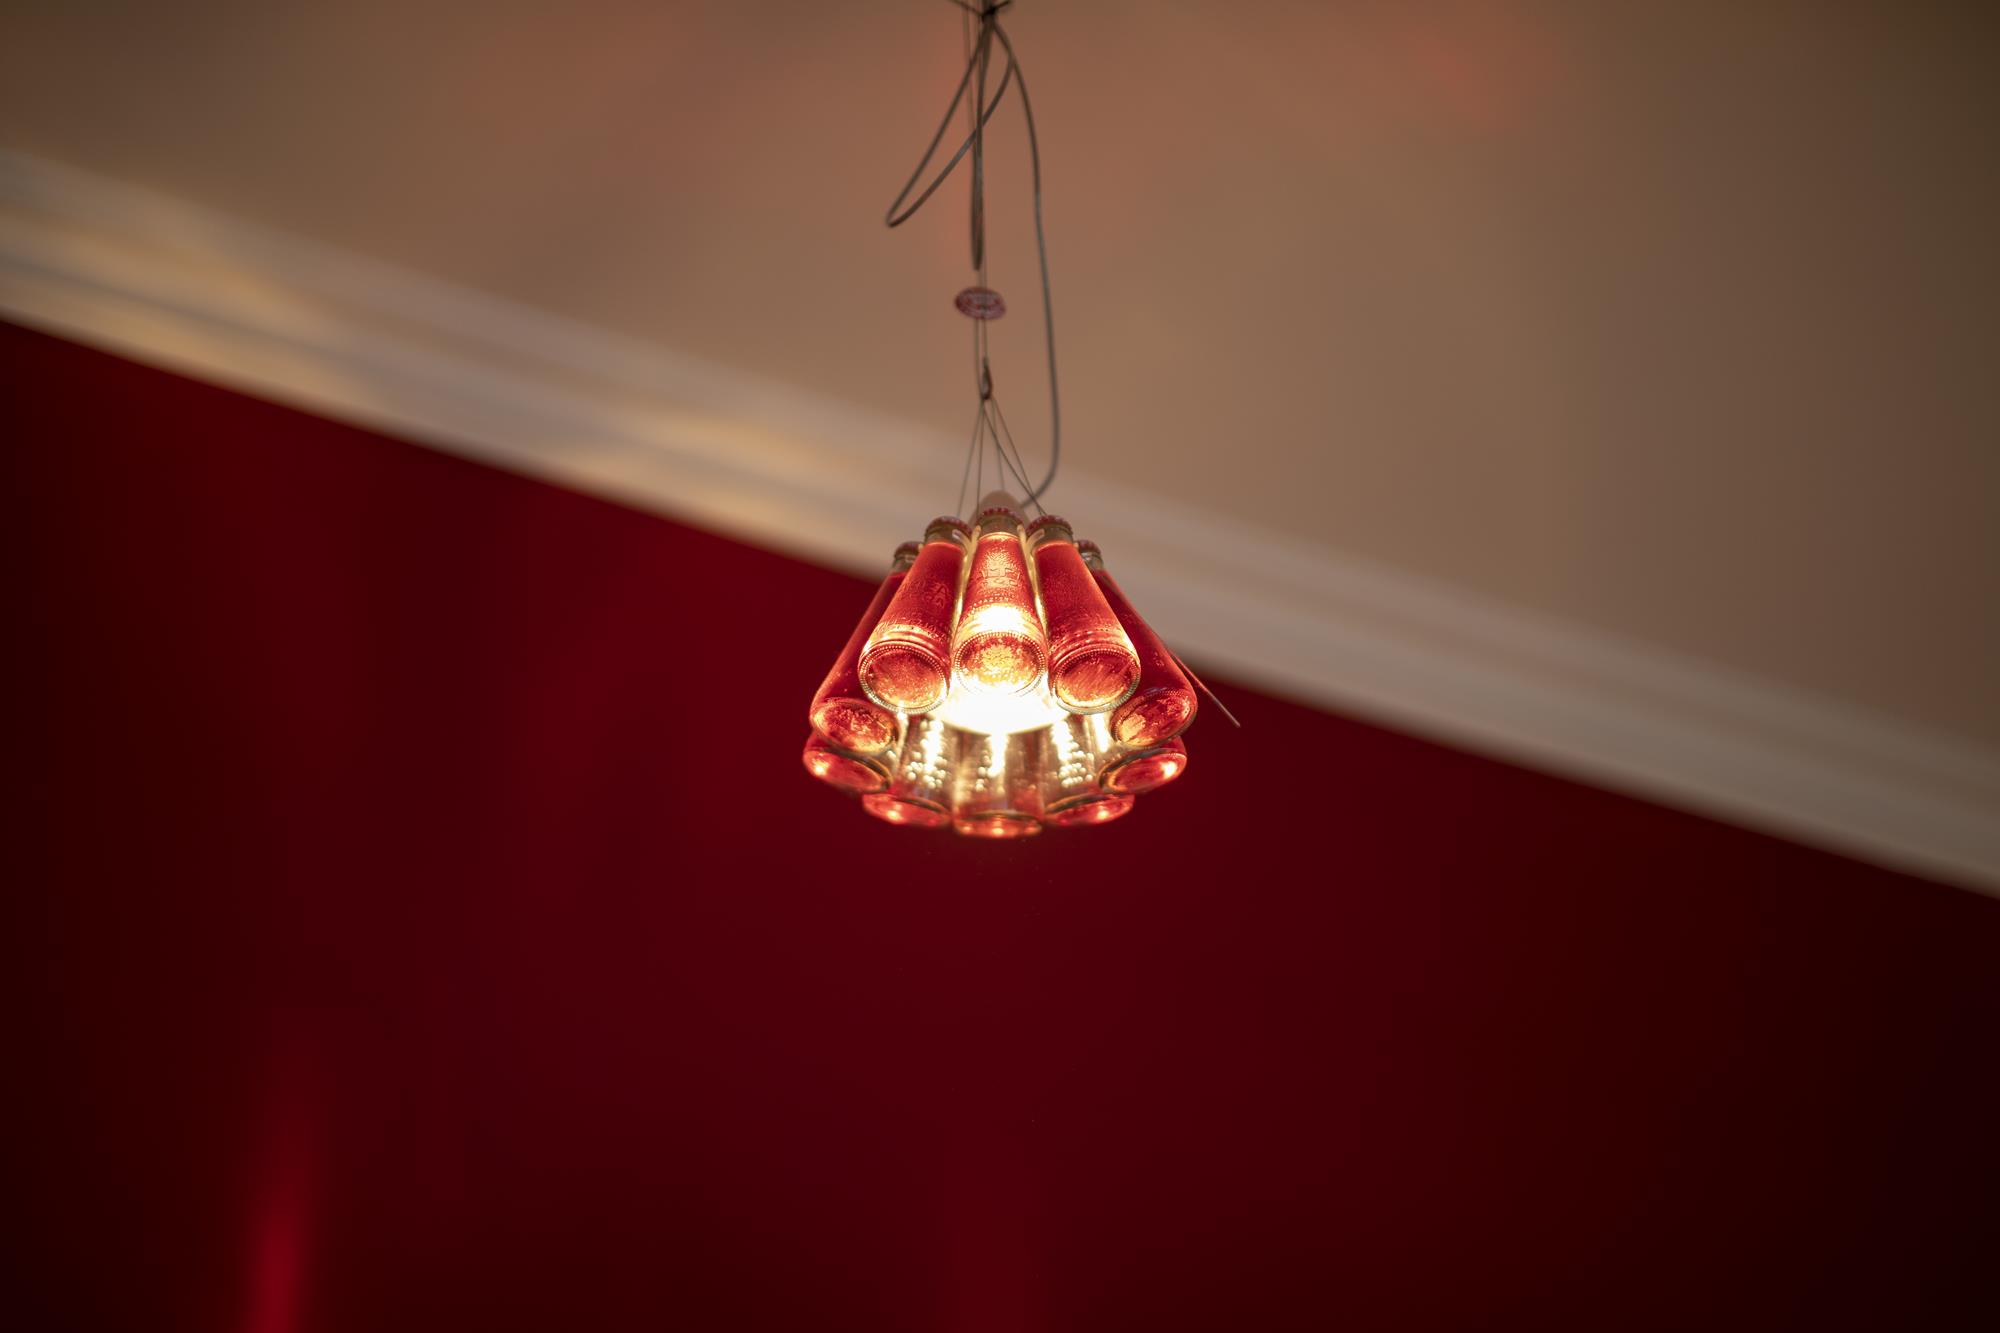 Detailaufnahme einer Künstlerlampe, die aus zehn kleinen Sanbitter-Fläschchen besteht. Die Lampe ist an und hängt vor roter Wand und weißer Decke.